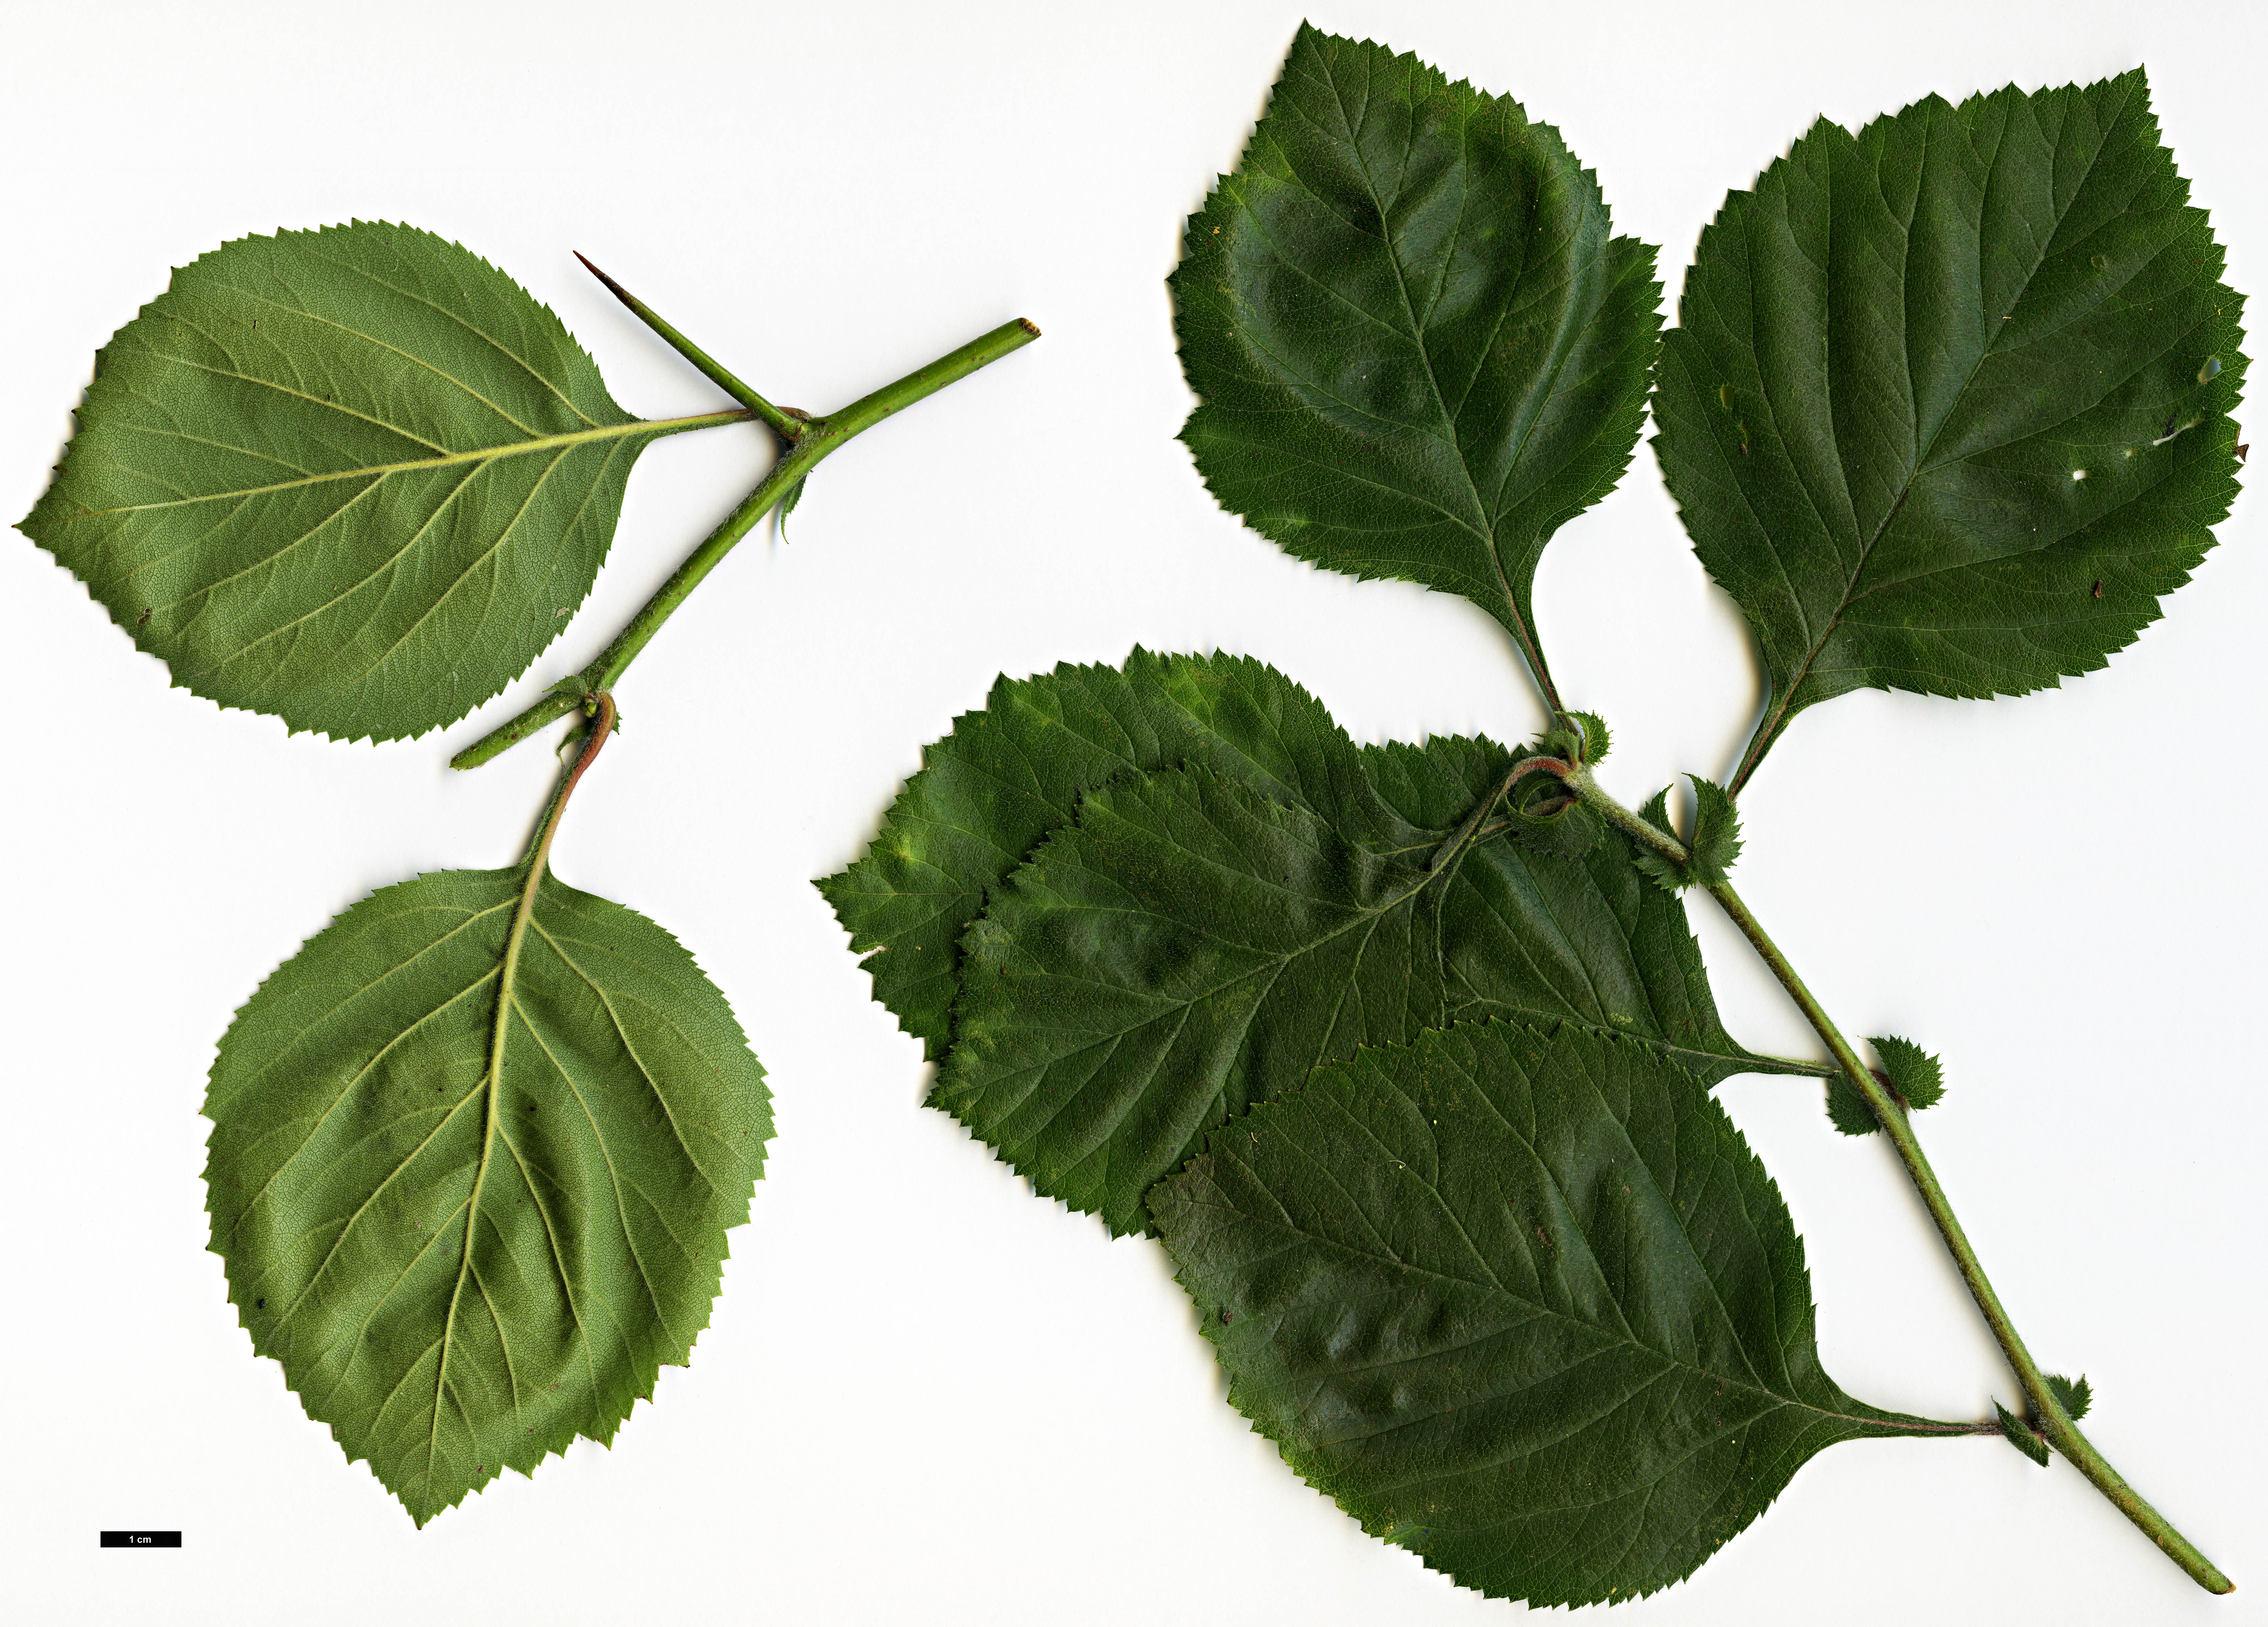 High resolution image: Family: Rosaceae - Genus: Crataegus - Taxon: ×dispessa